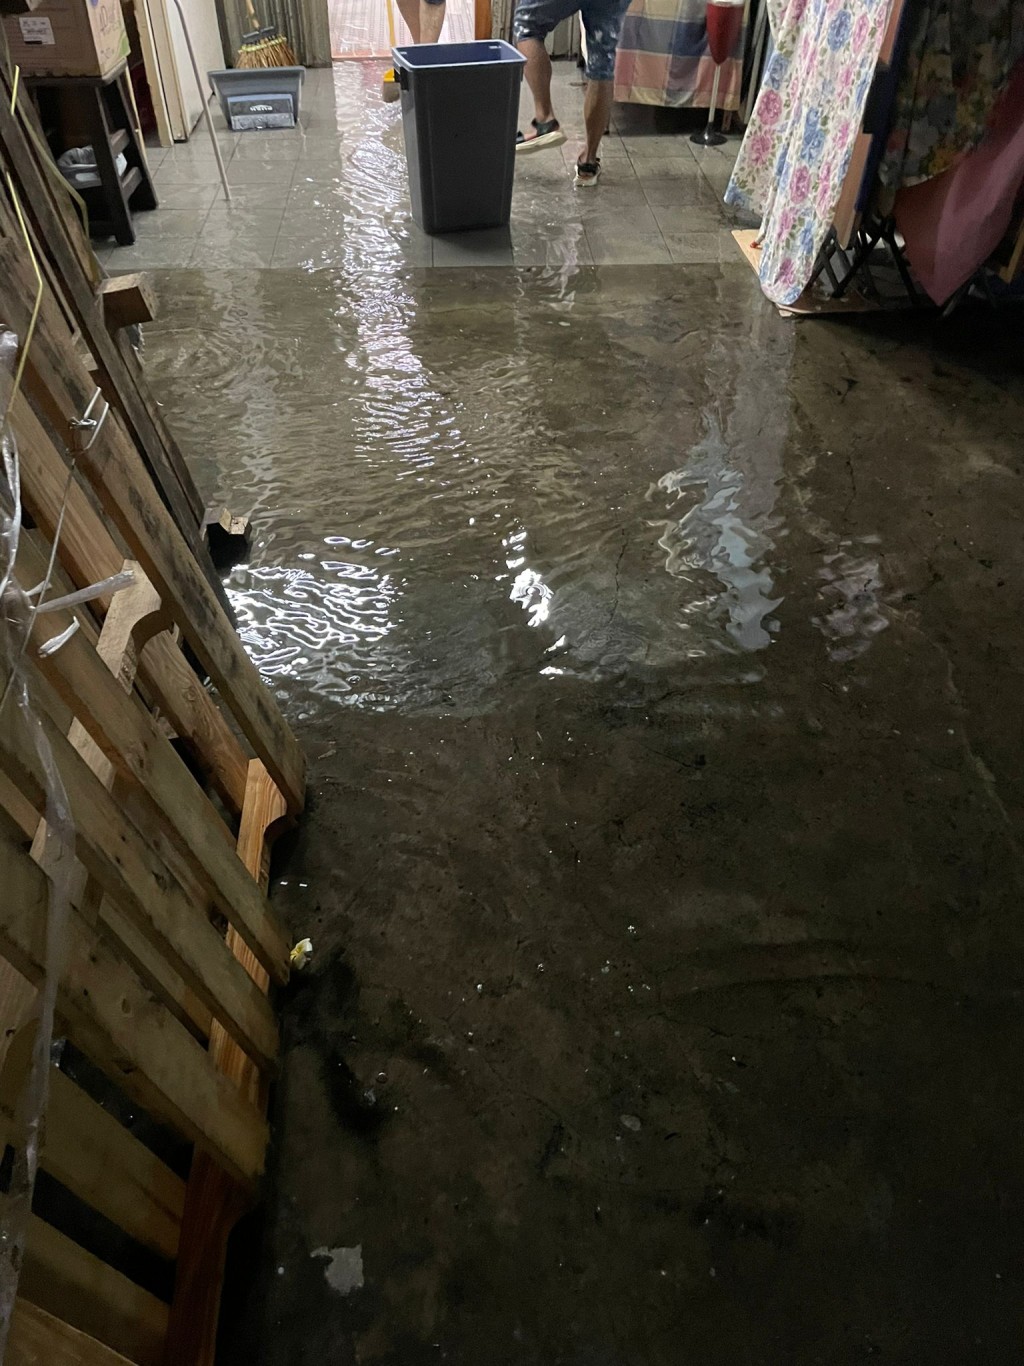 居民急于将洪水舀出屋外范围。(受访者提供相片)